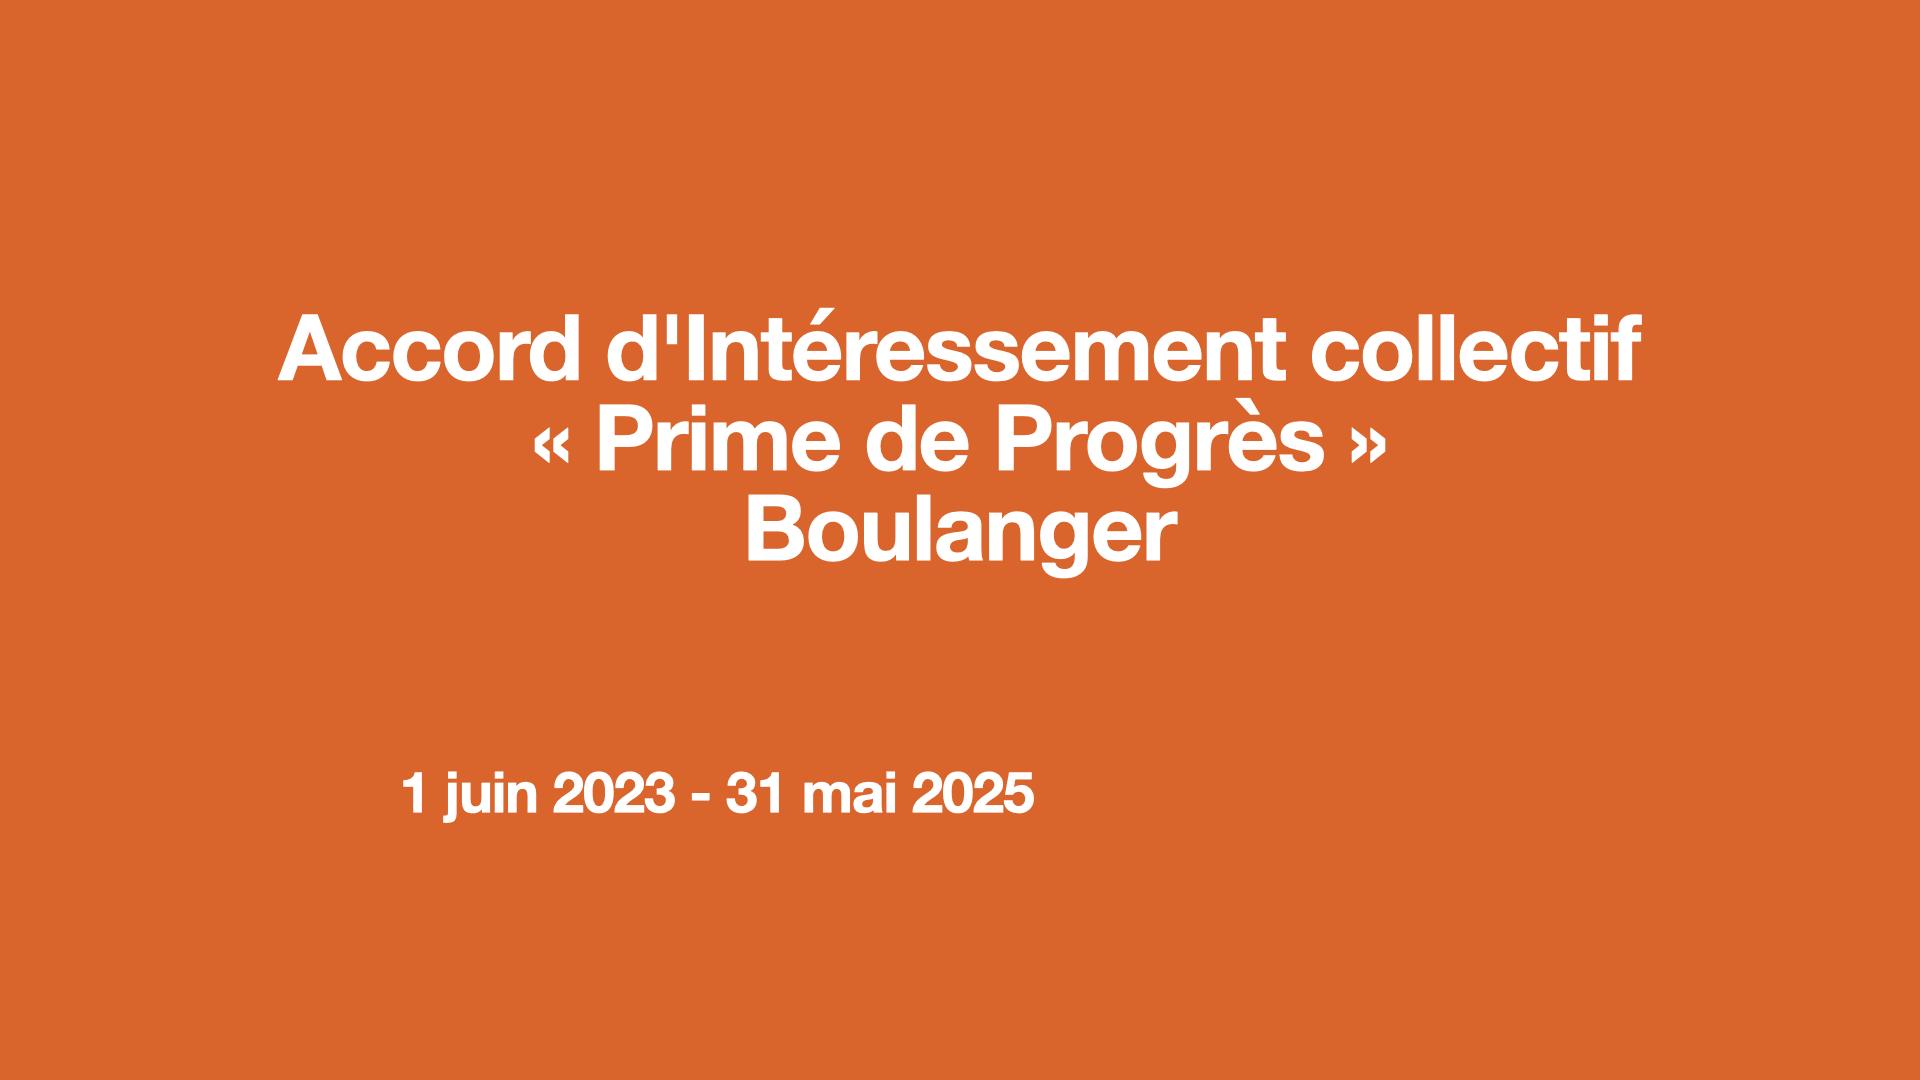 Accord d'Intéressement collectif « Prime de Progrès » Boulanger 